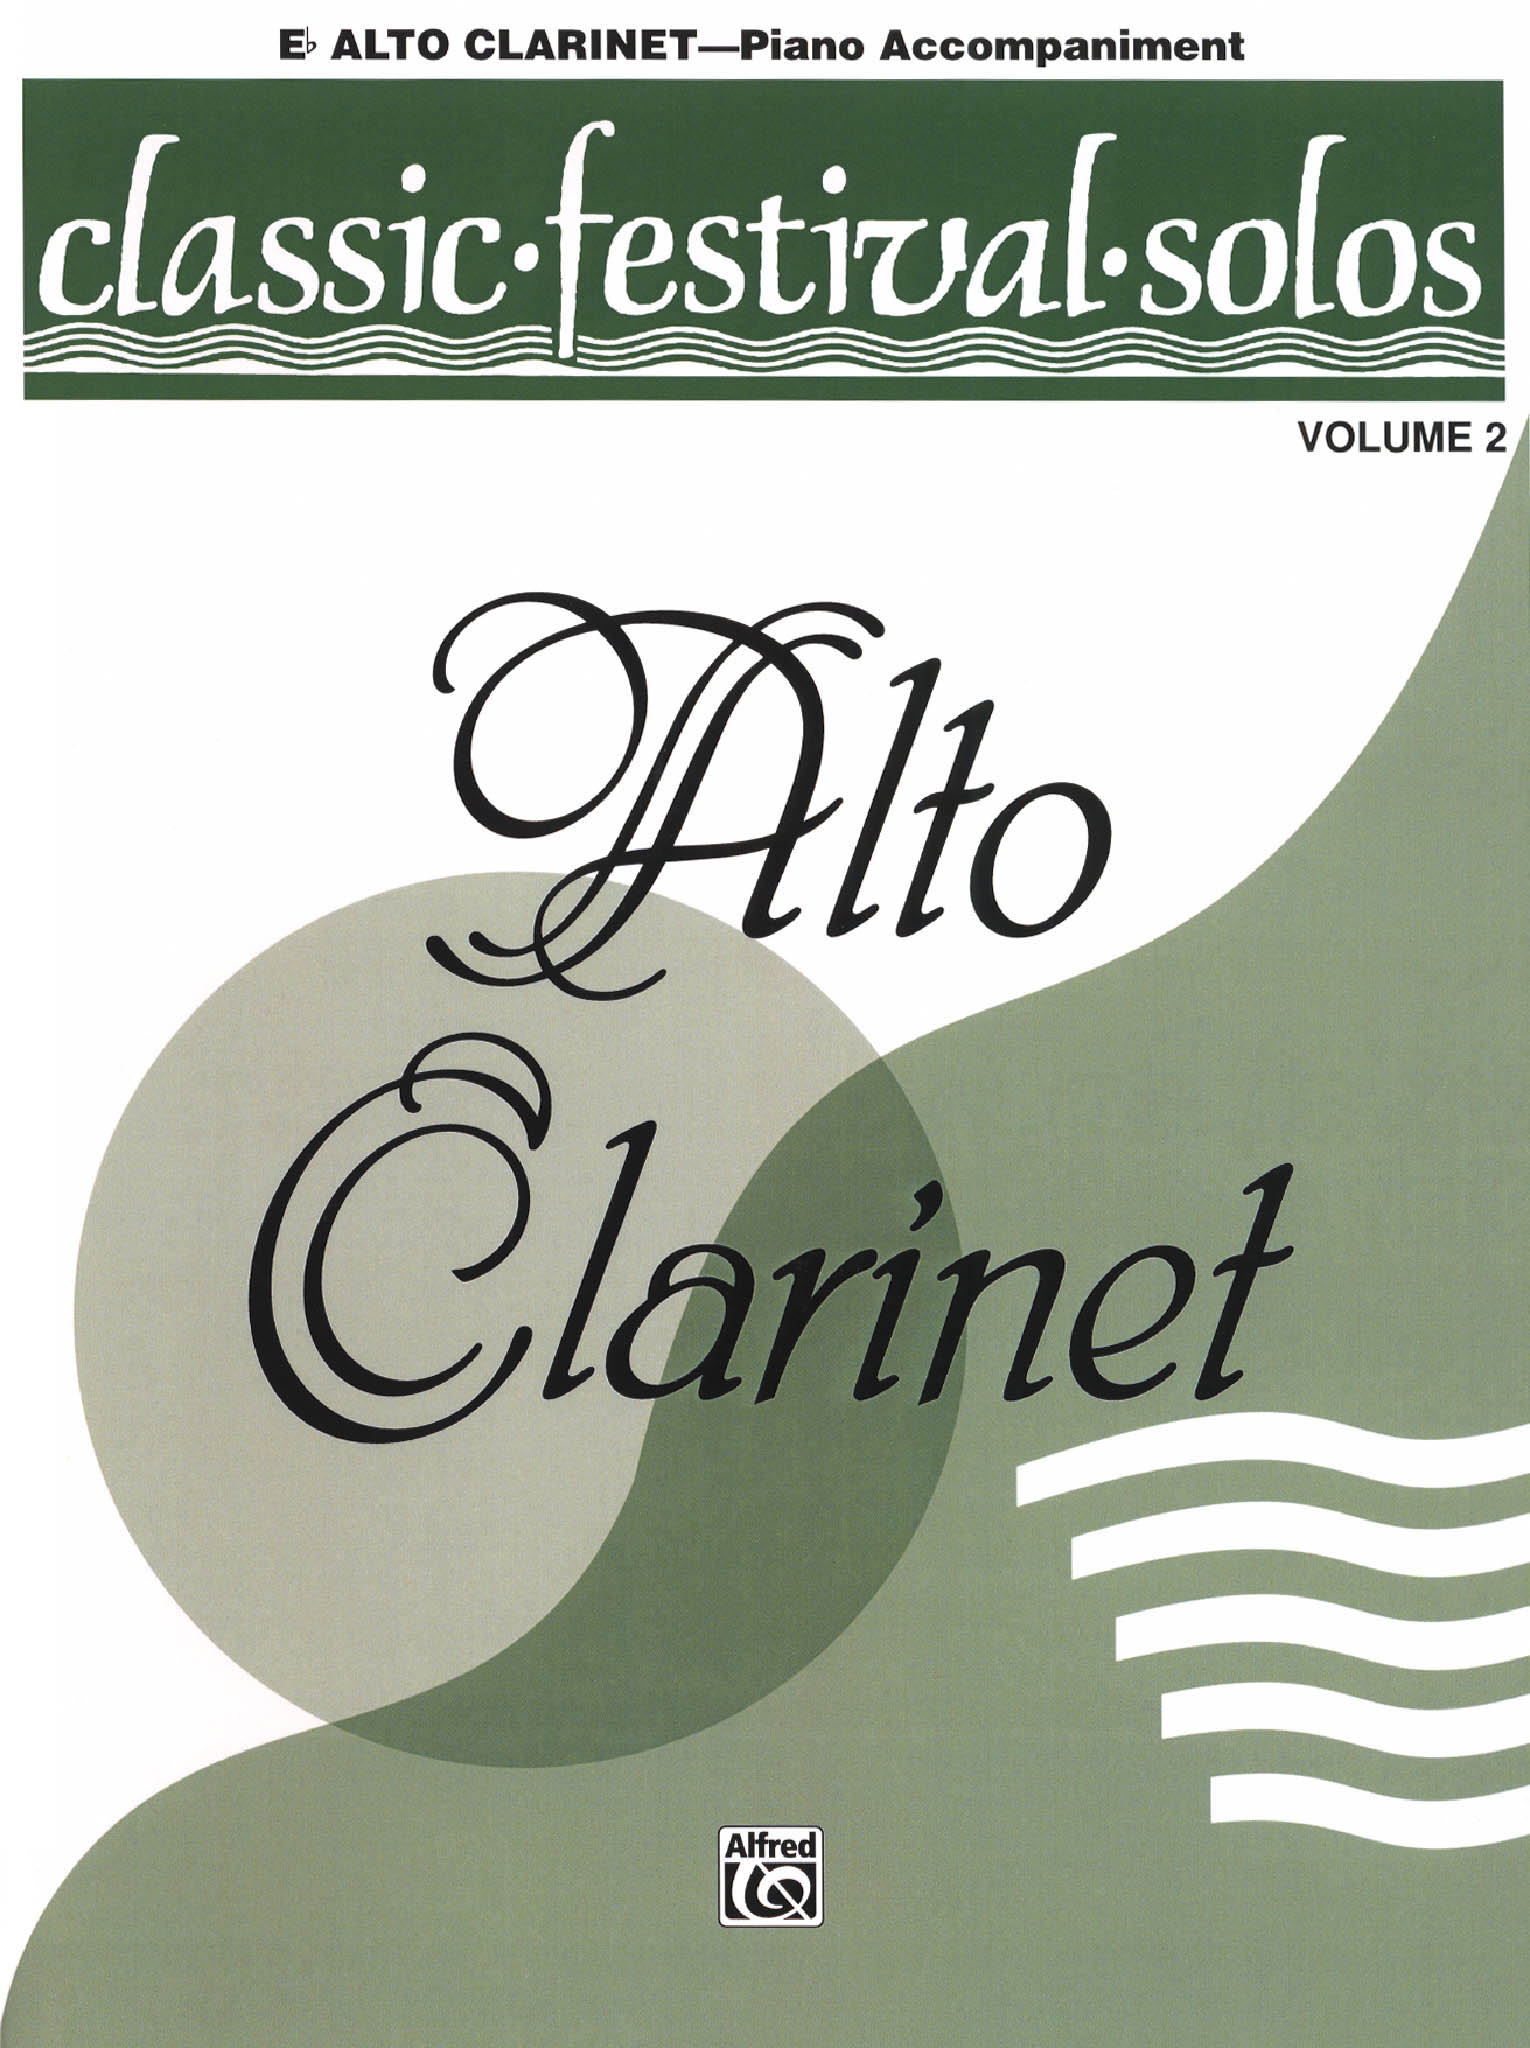 Belwin Classic Festival Solos: Alto Clarinet, volume 2 score cover